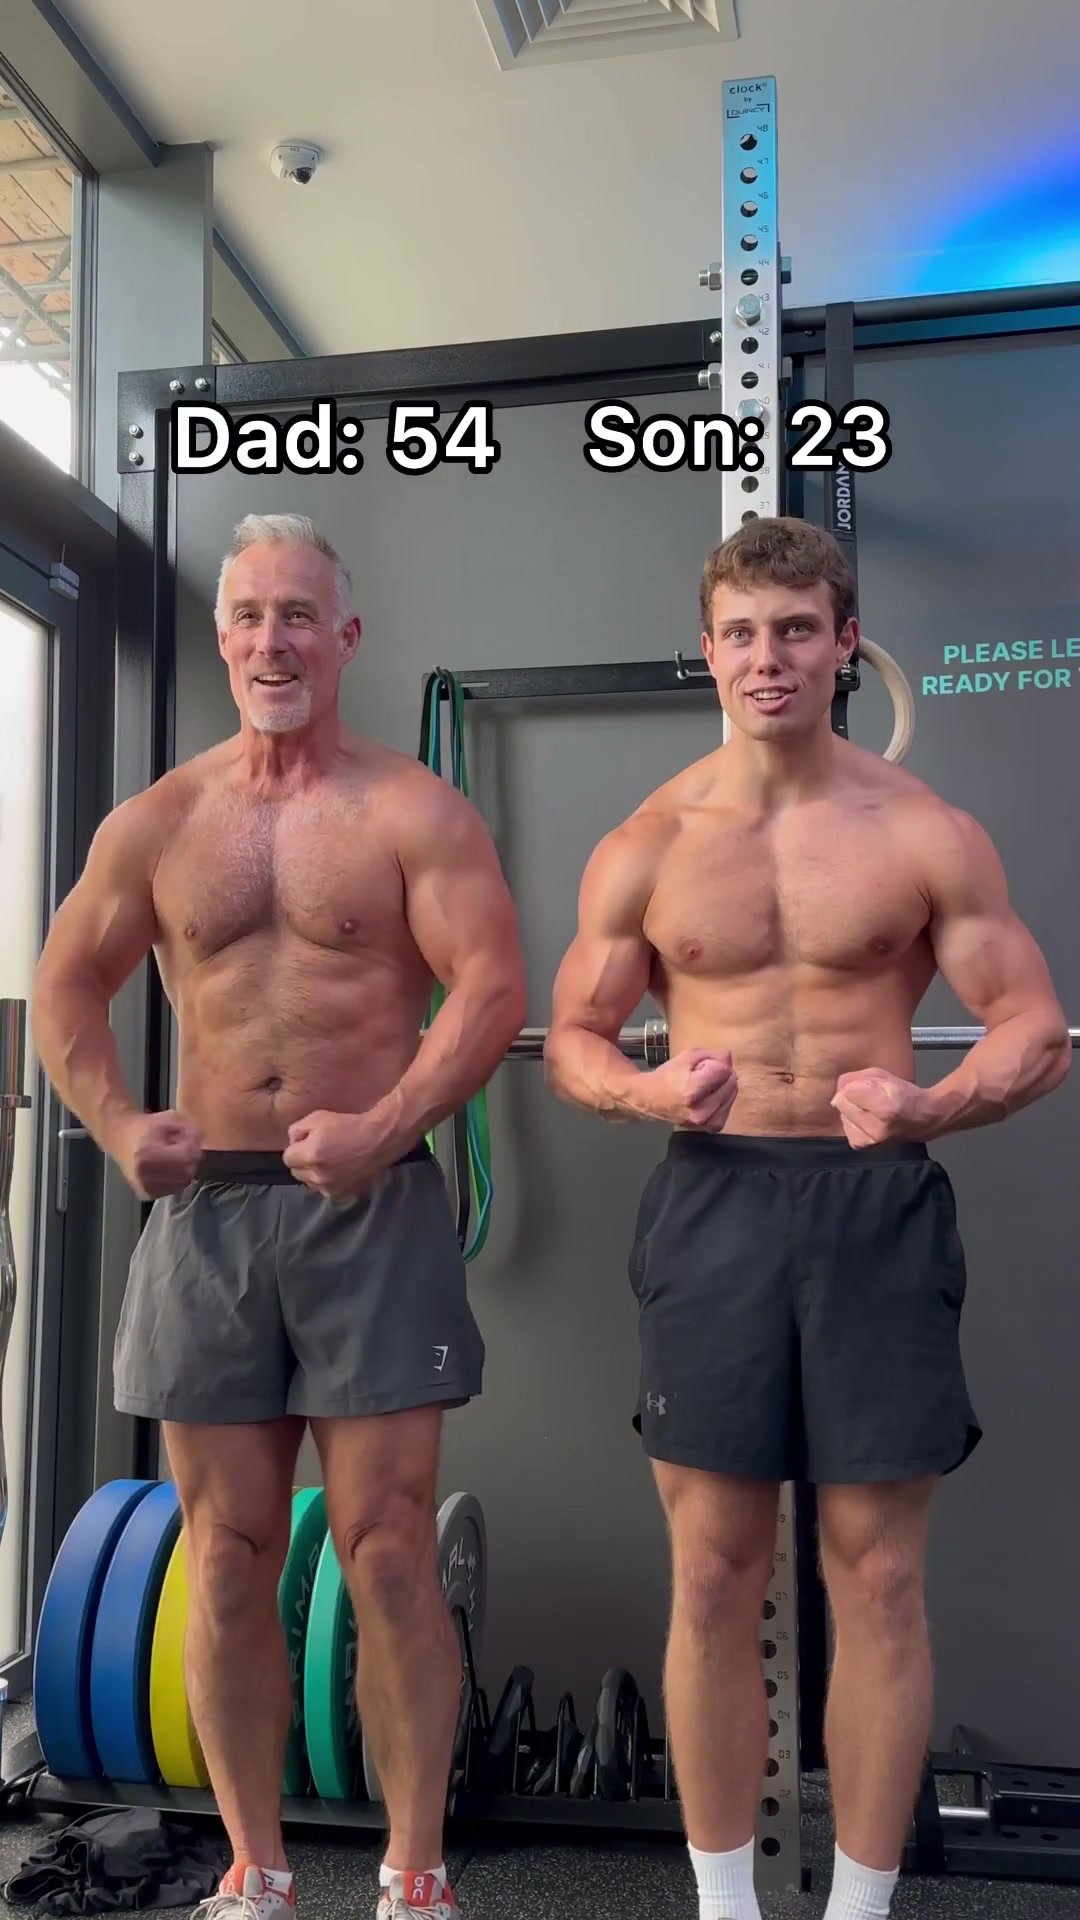 (no nudity) Real Dad and Son Flex